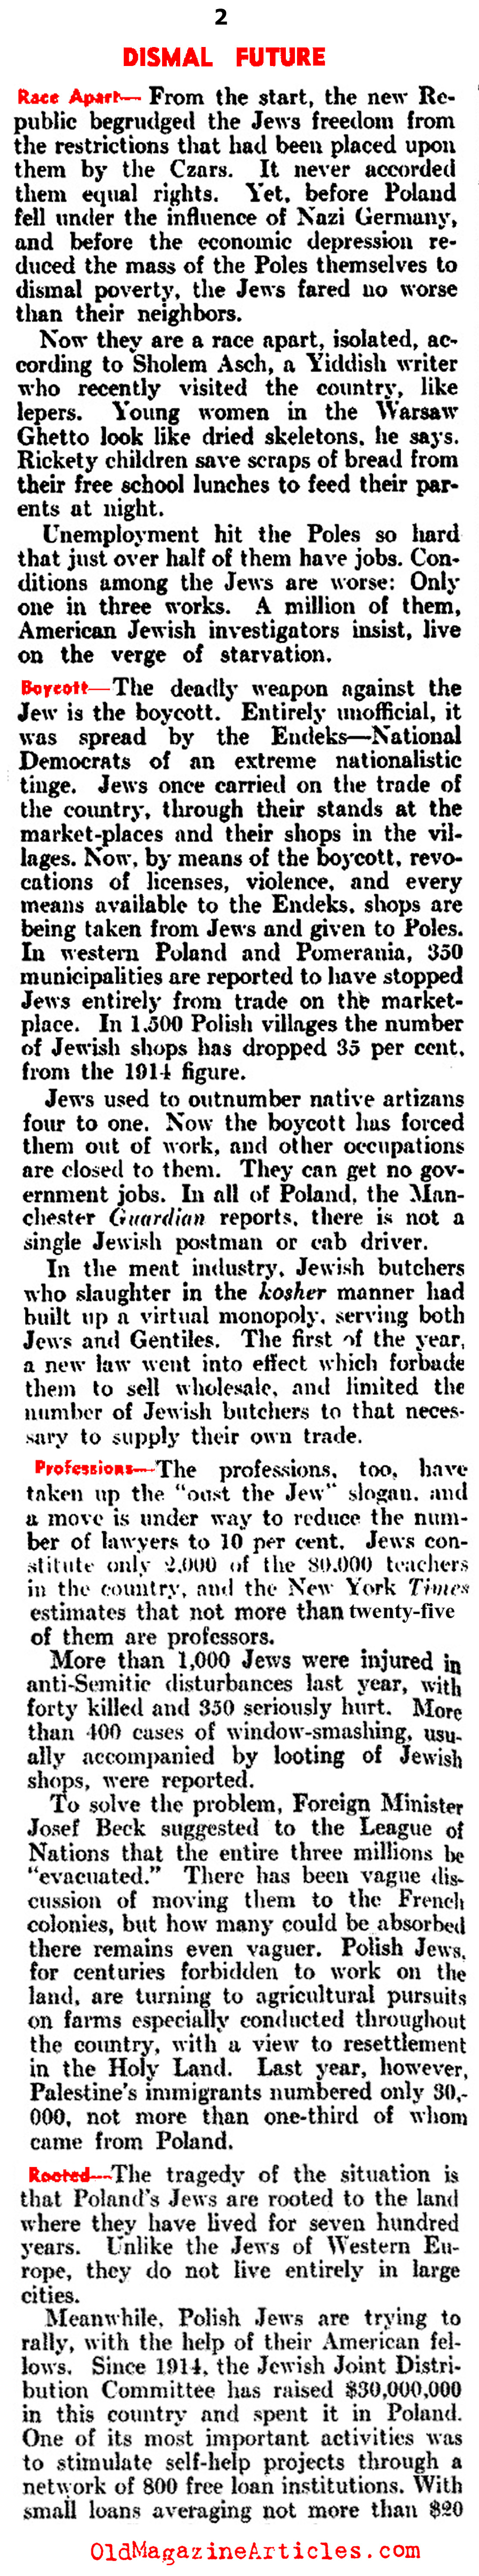 Polish Jews Face Dismal Future (Literary Digest, 1937)